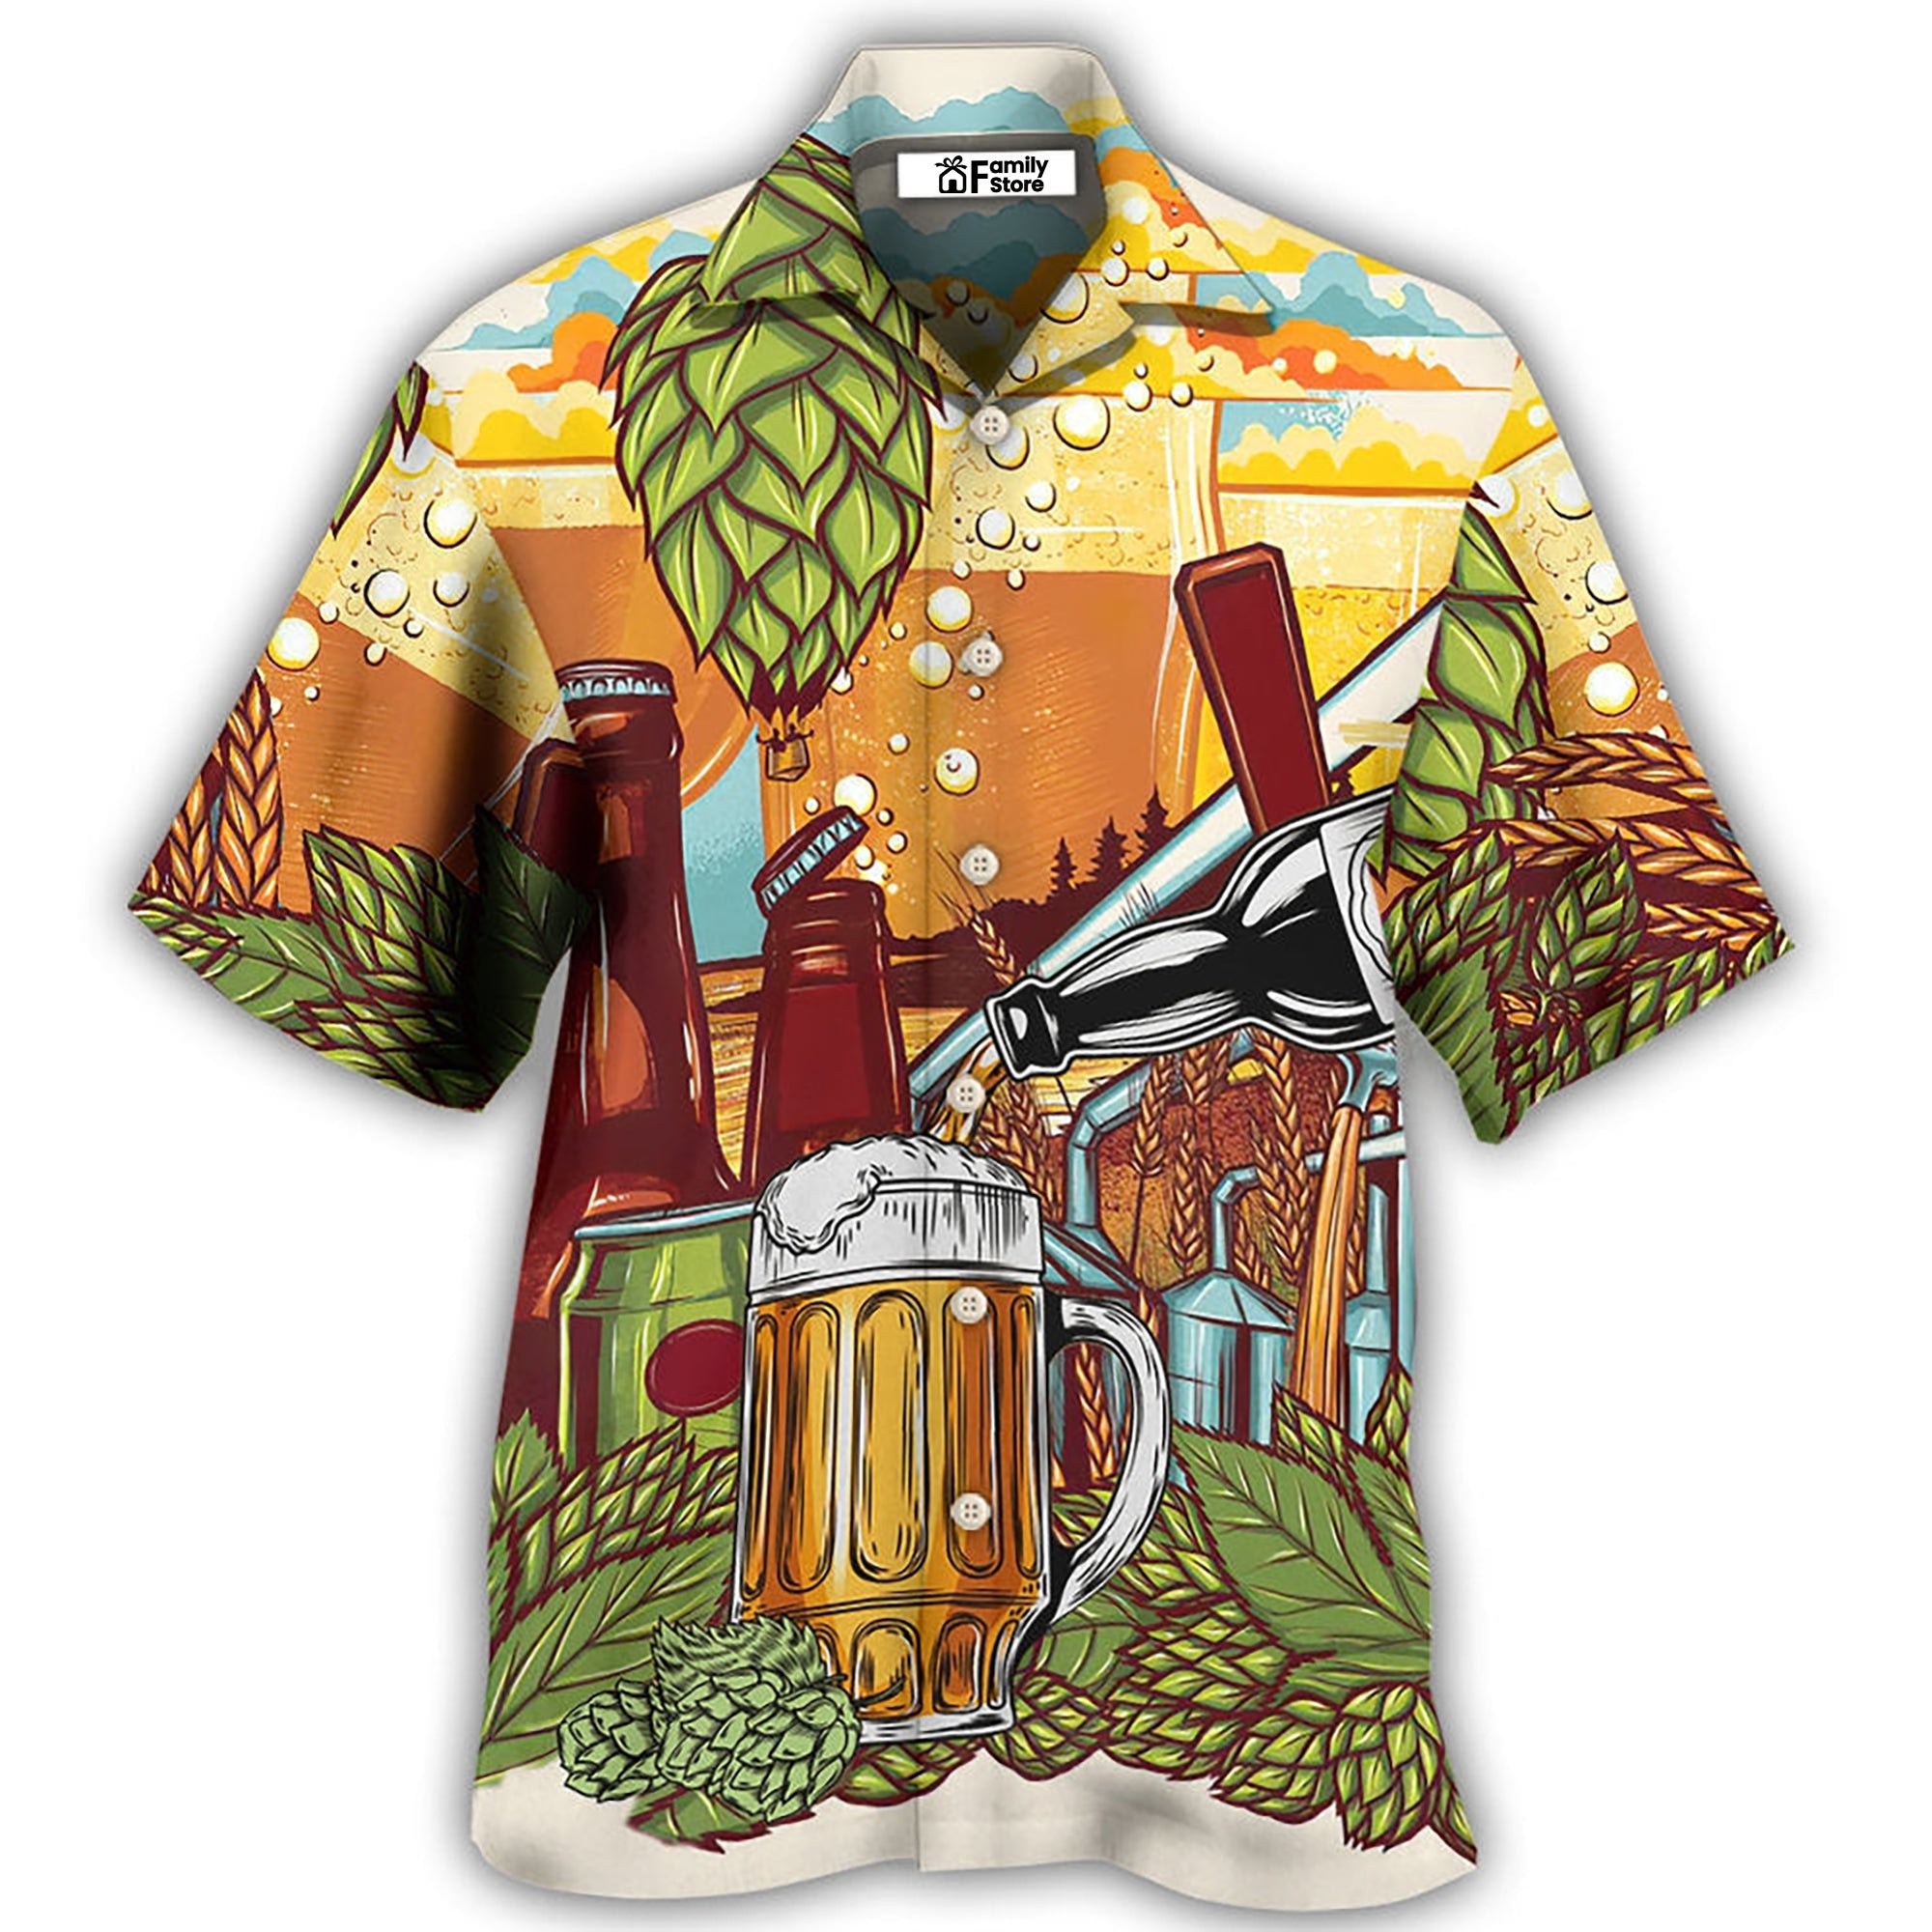 Beer Drinking It's Beer Time - Hawaiian Shirt